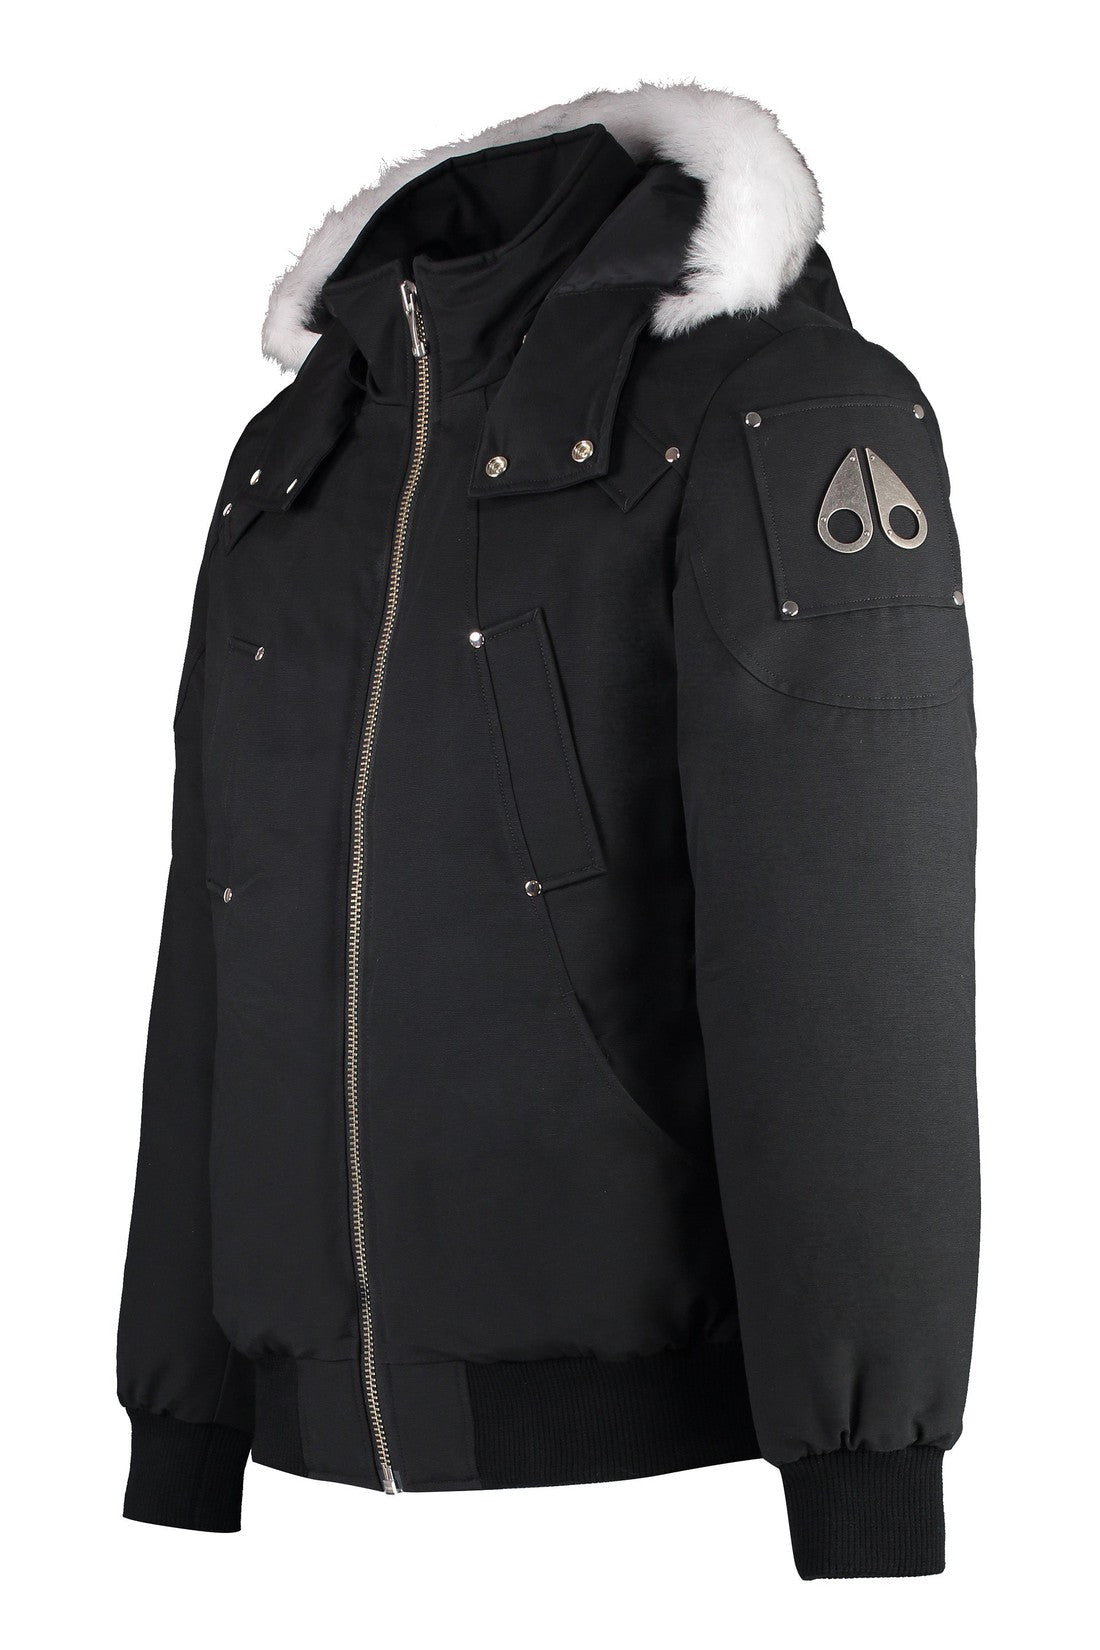 Moose Knuckles-OUTLET-SALE-Hooded padded bomber jacket-ARCHIVIST